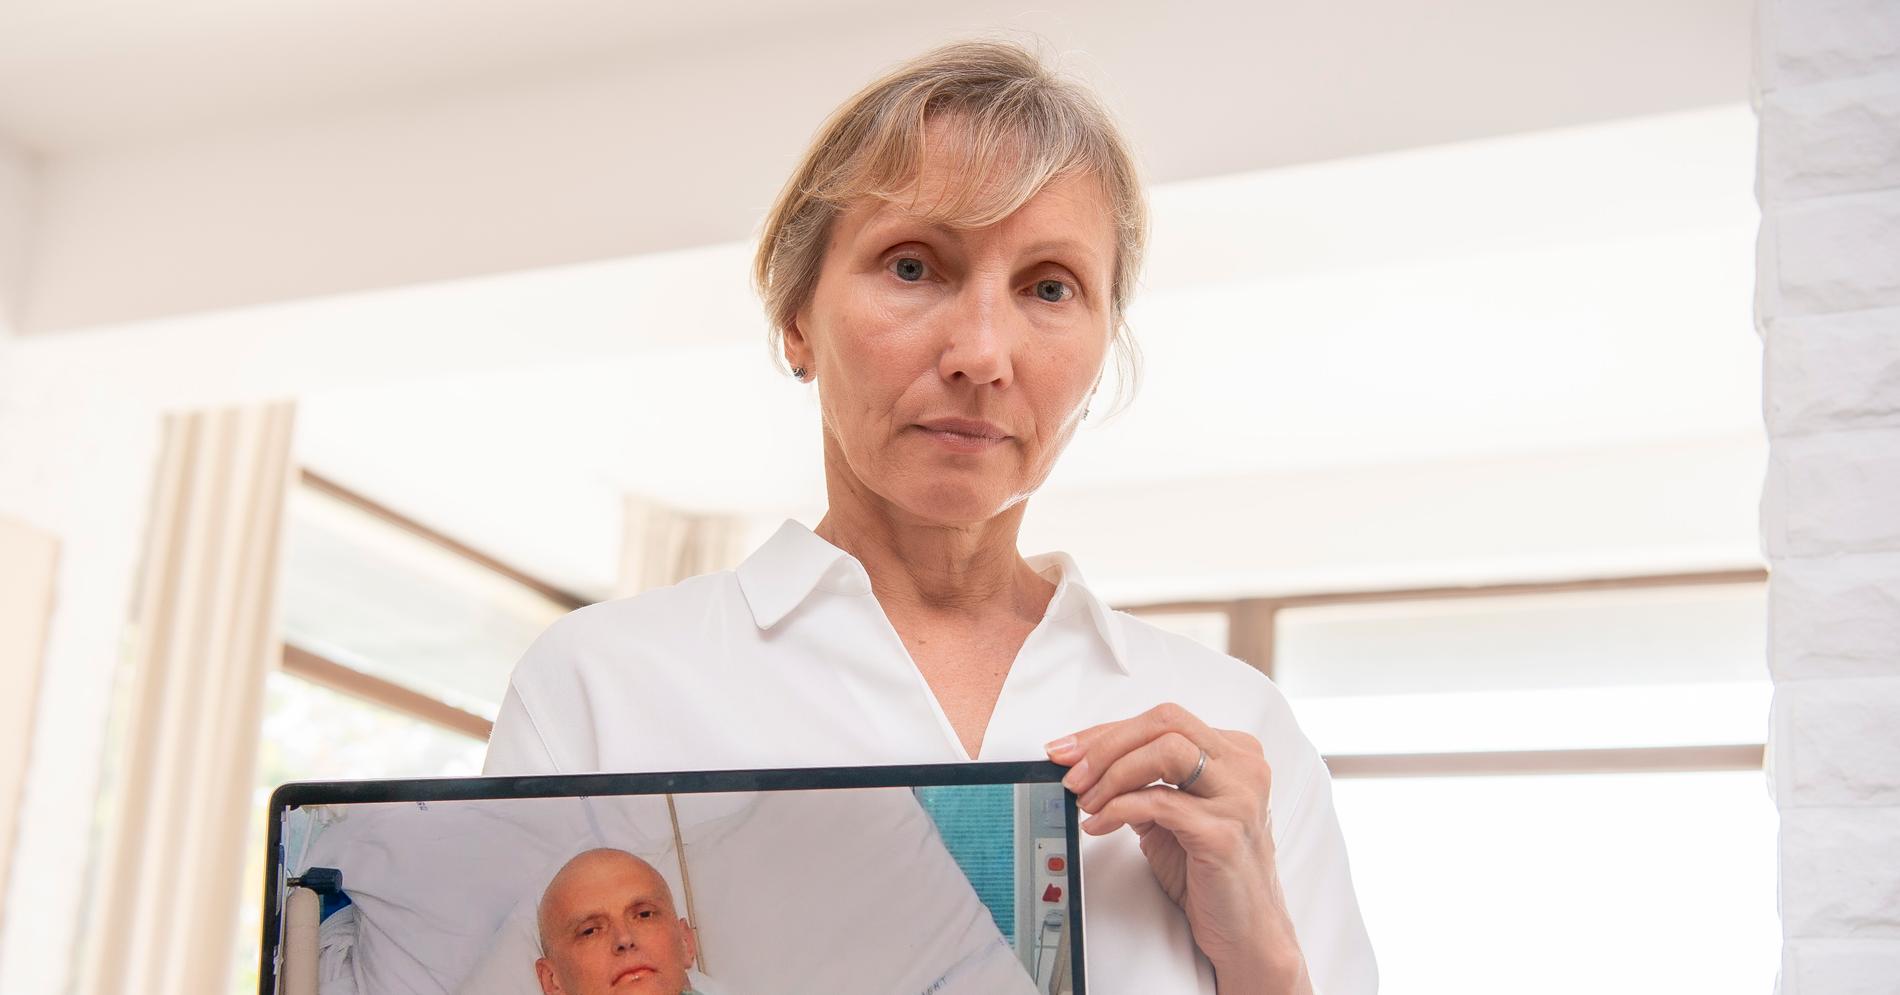 Marina håller upp en bild, som uppmärksammats världen över, på sin döda make  Aleksandr ”Sasha” Litvinenko i en sjuksäng.